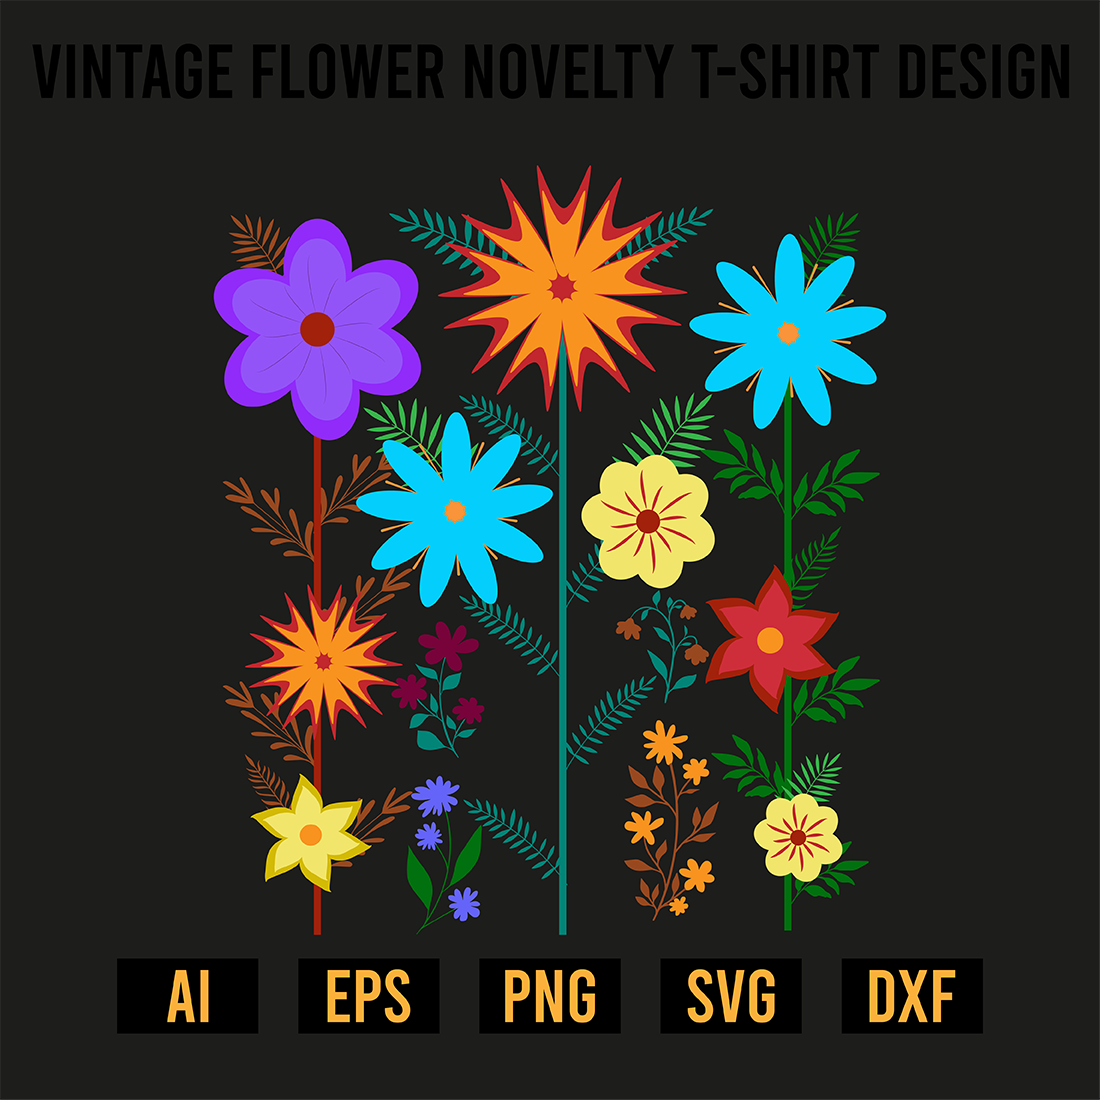 Vintage Flower Novelty T-Shirt Design preview image.